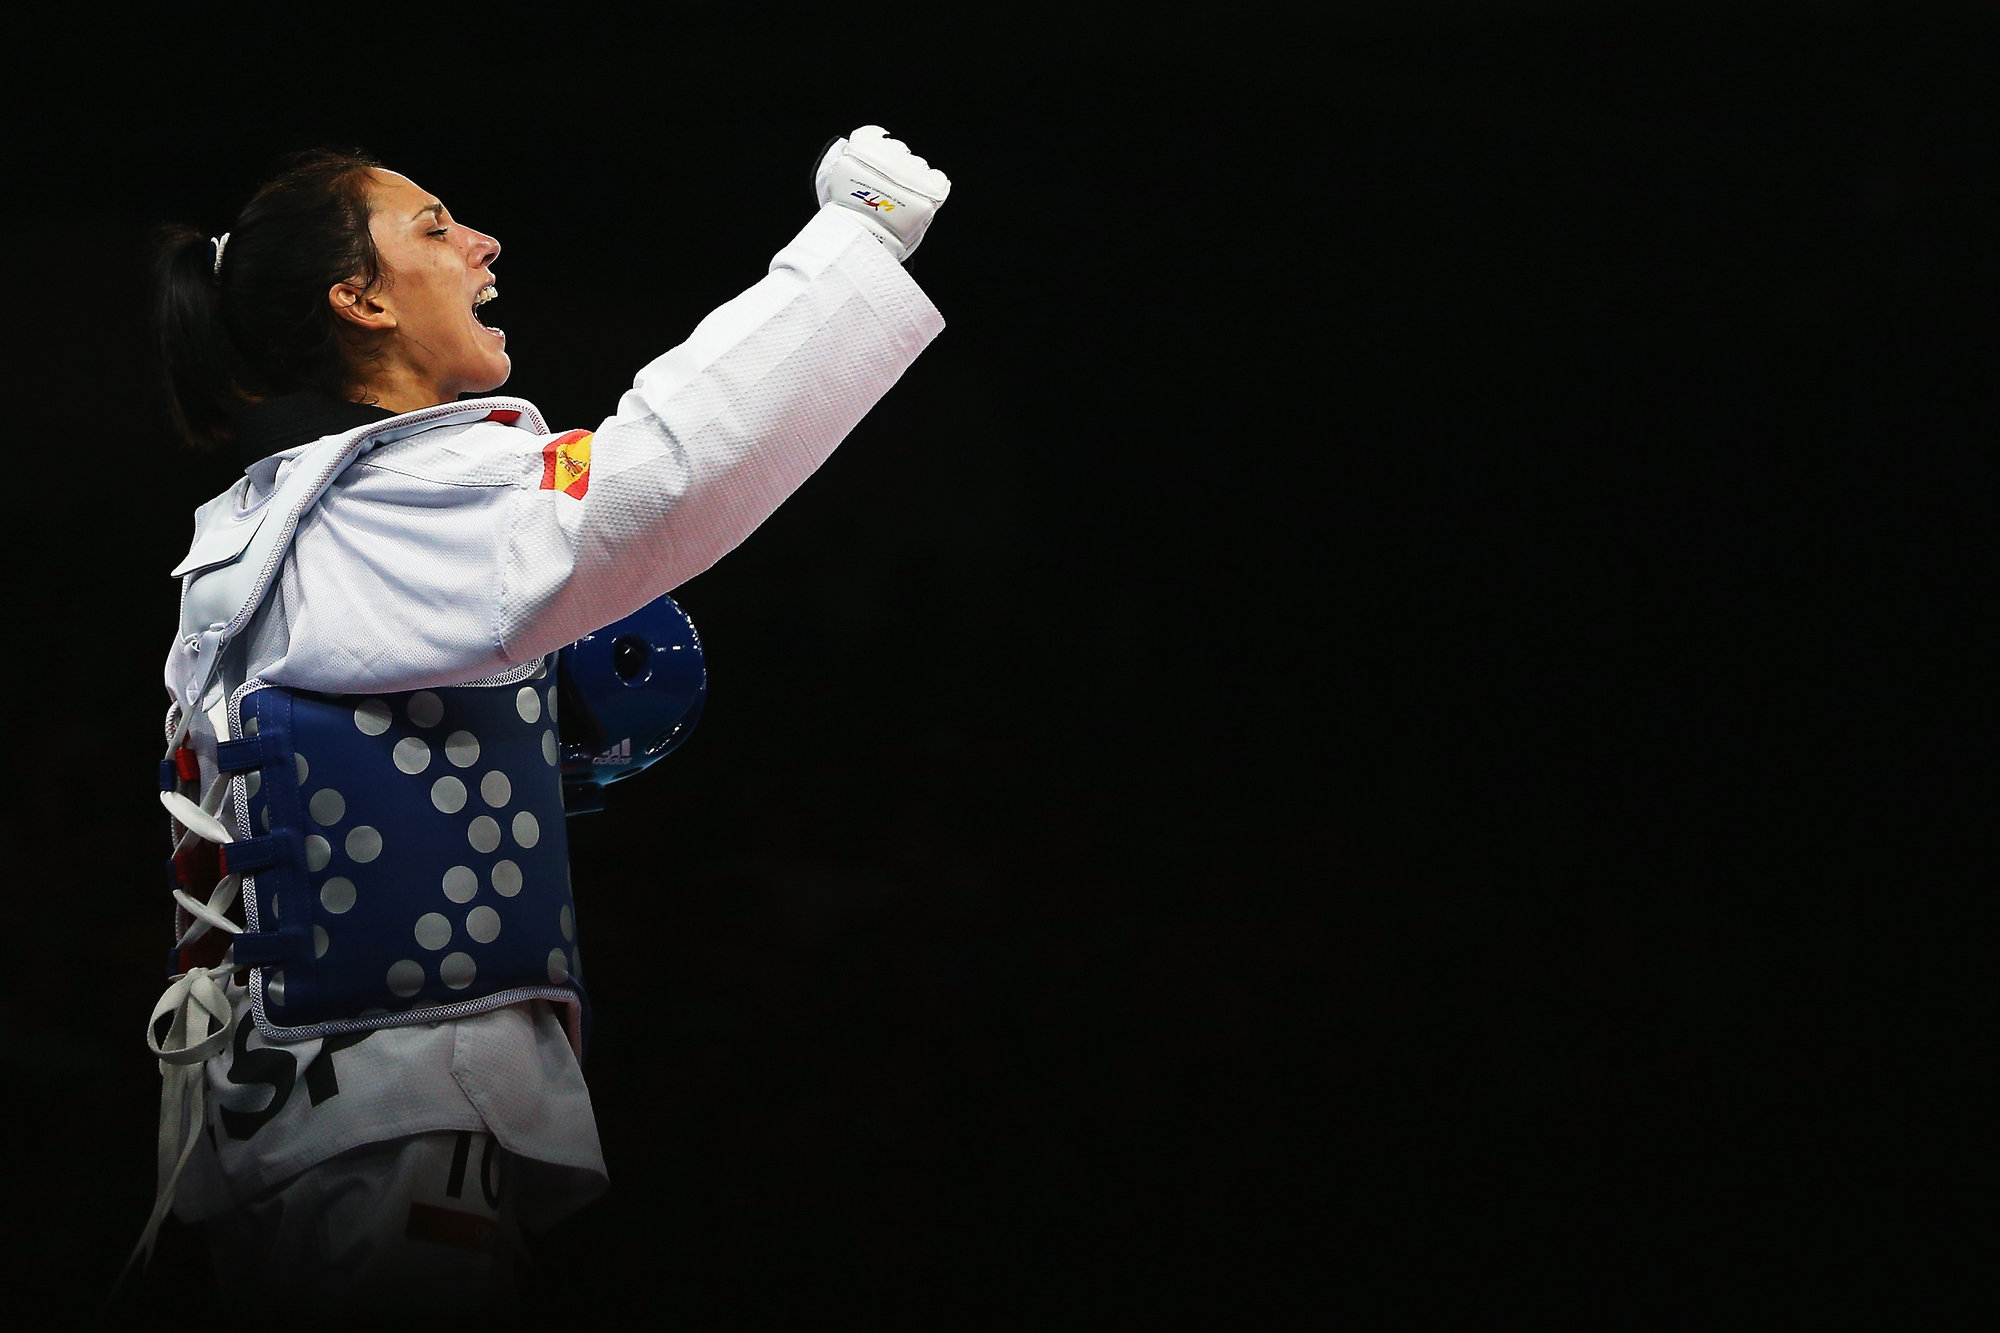 El Mallorca homenajeará a la taekwondista Brigitte Yagüe por su medalla olímpica